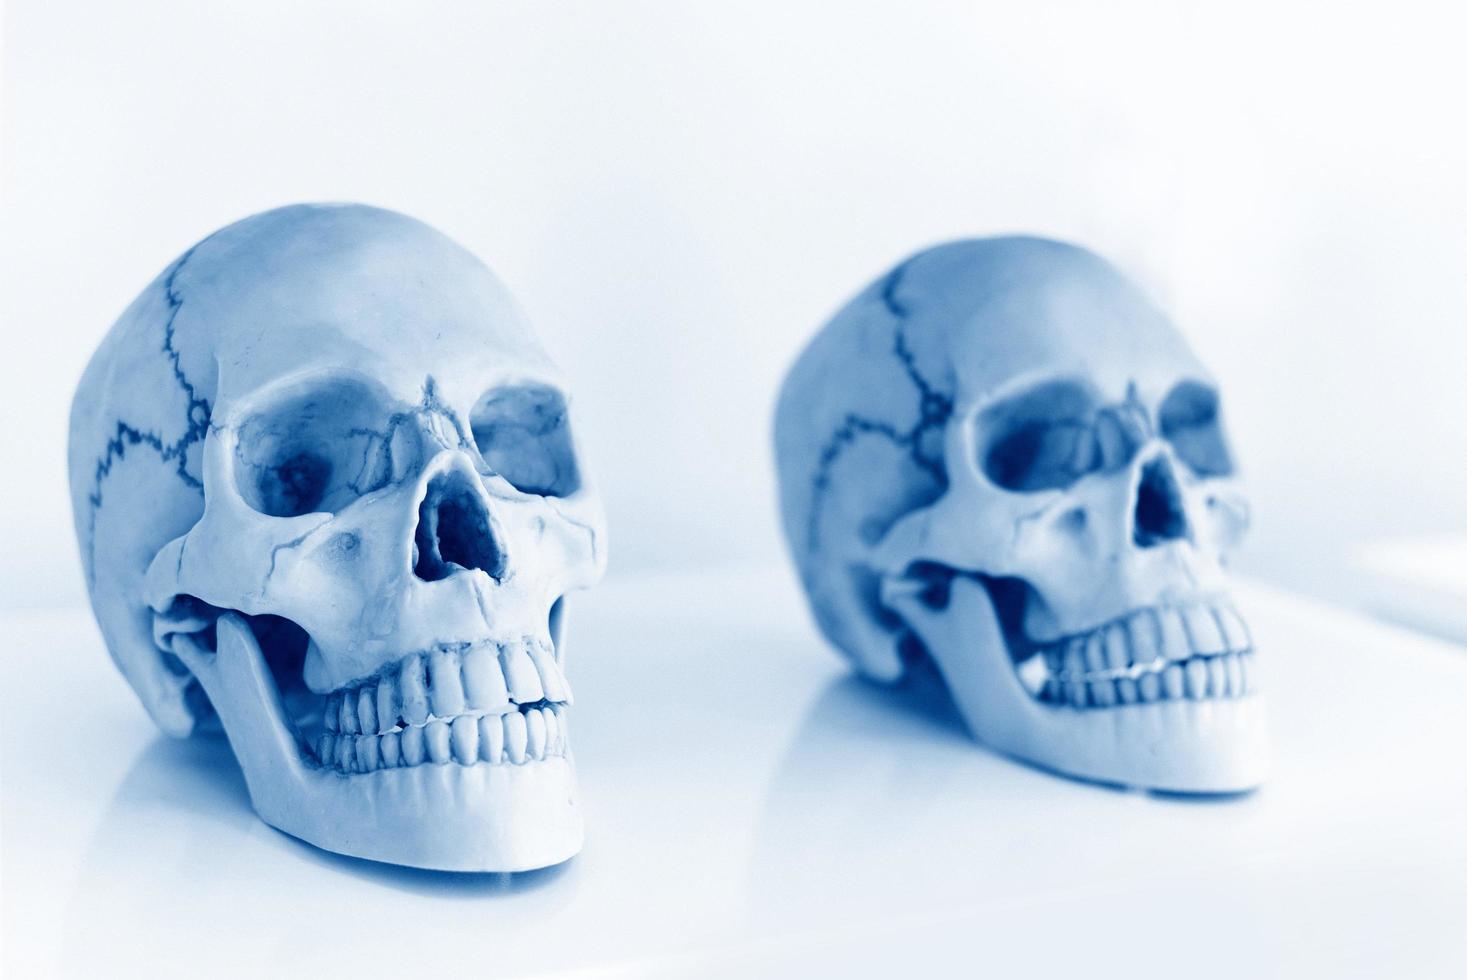 mänsklig skalle för studier i vetenskapsrummet - forskning och experiment av studenter eller läkare skallar är också symboler för dödsskräck och halloween-koncept foto